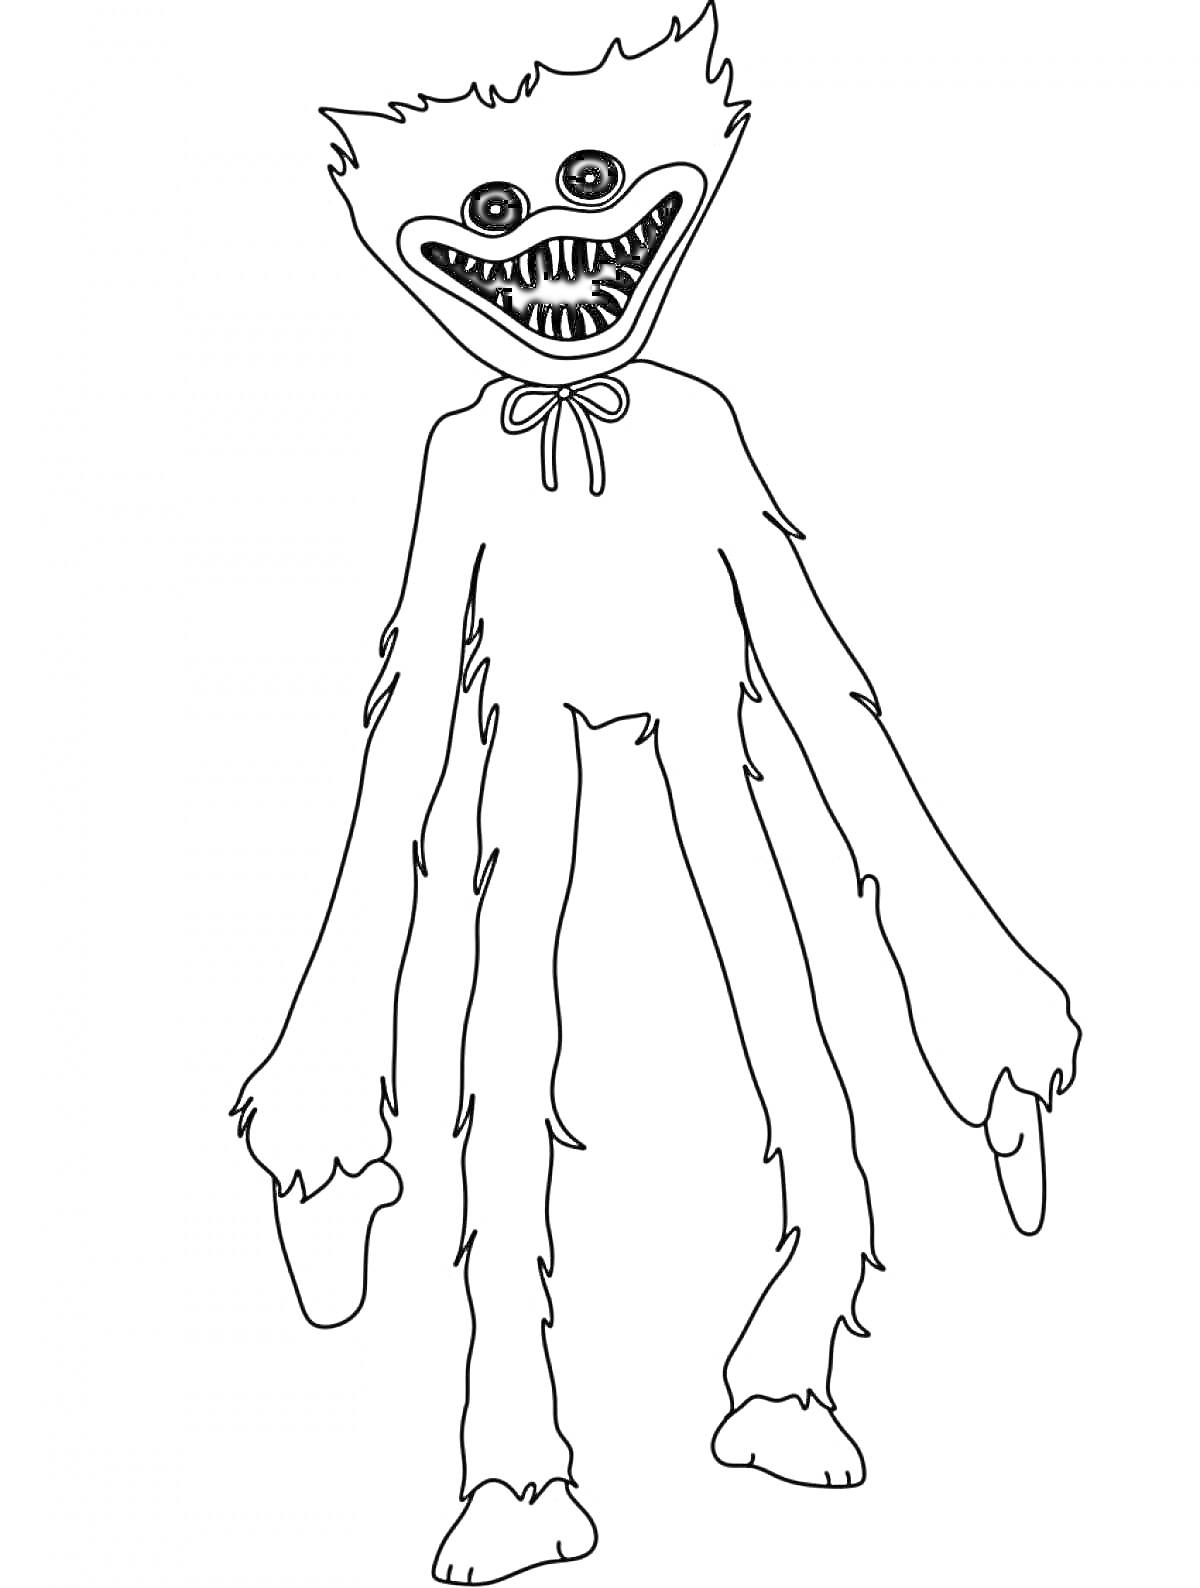 Раскраска Хаги Ваги с длинными руками и острыми зубами